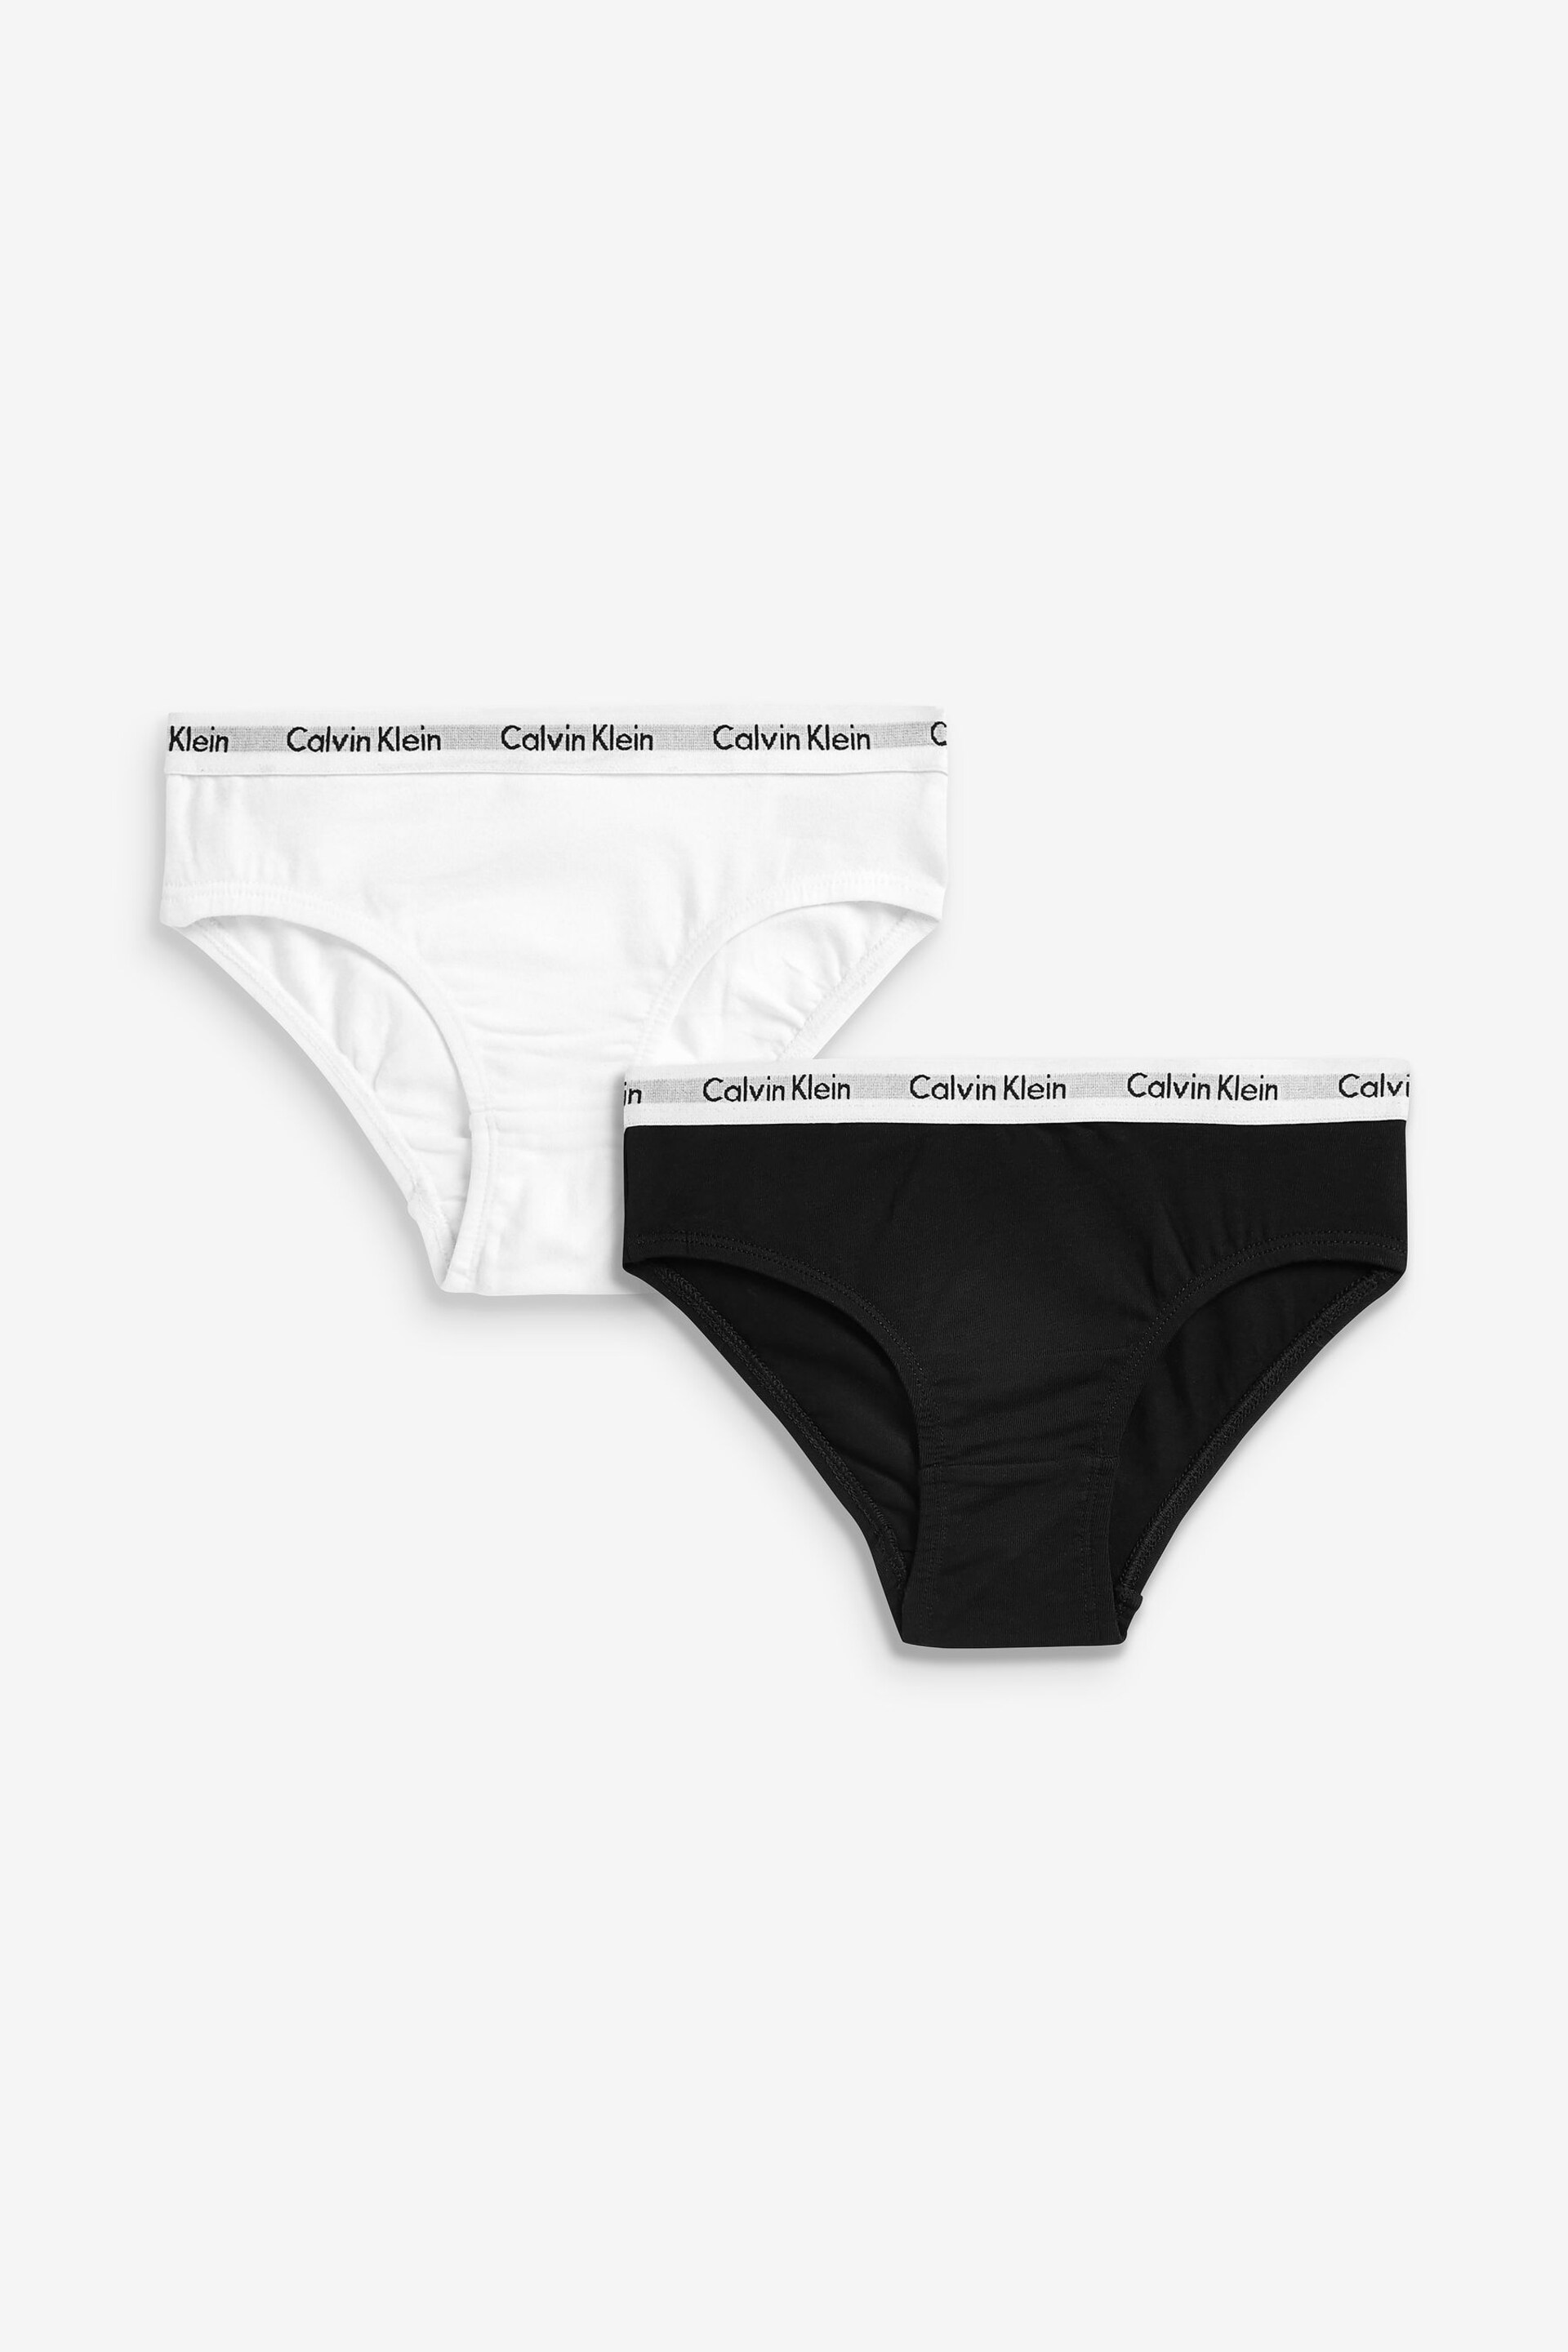 Calvin Klein Black Modern Cotton Girls Bikini Underwears 2 Pack - Image 1 of 3